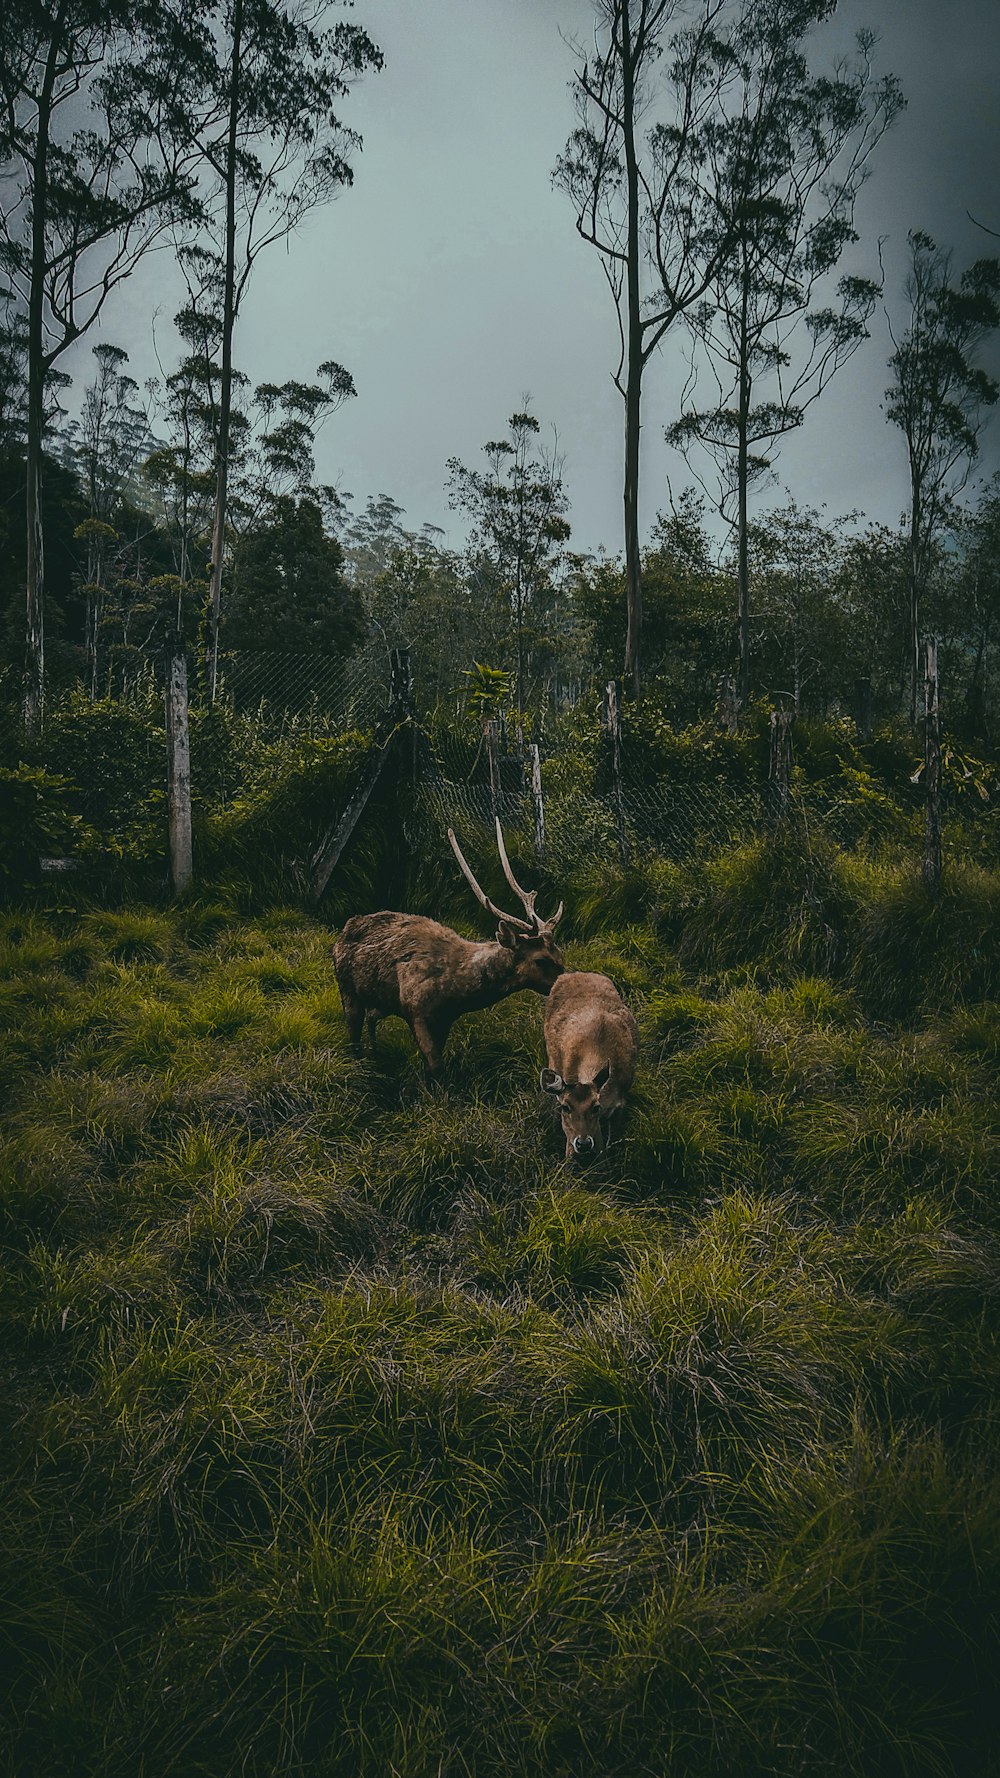 two brown deer grazing